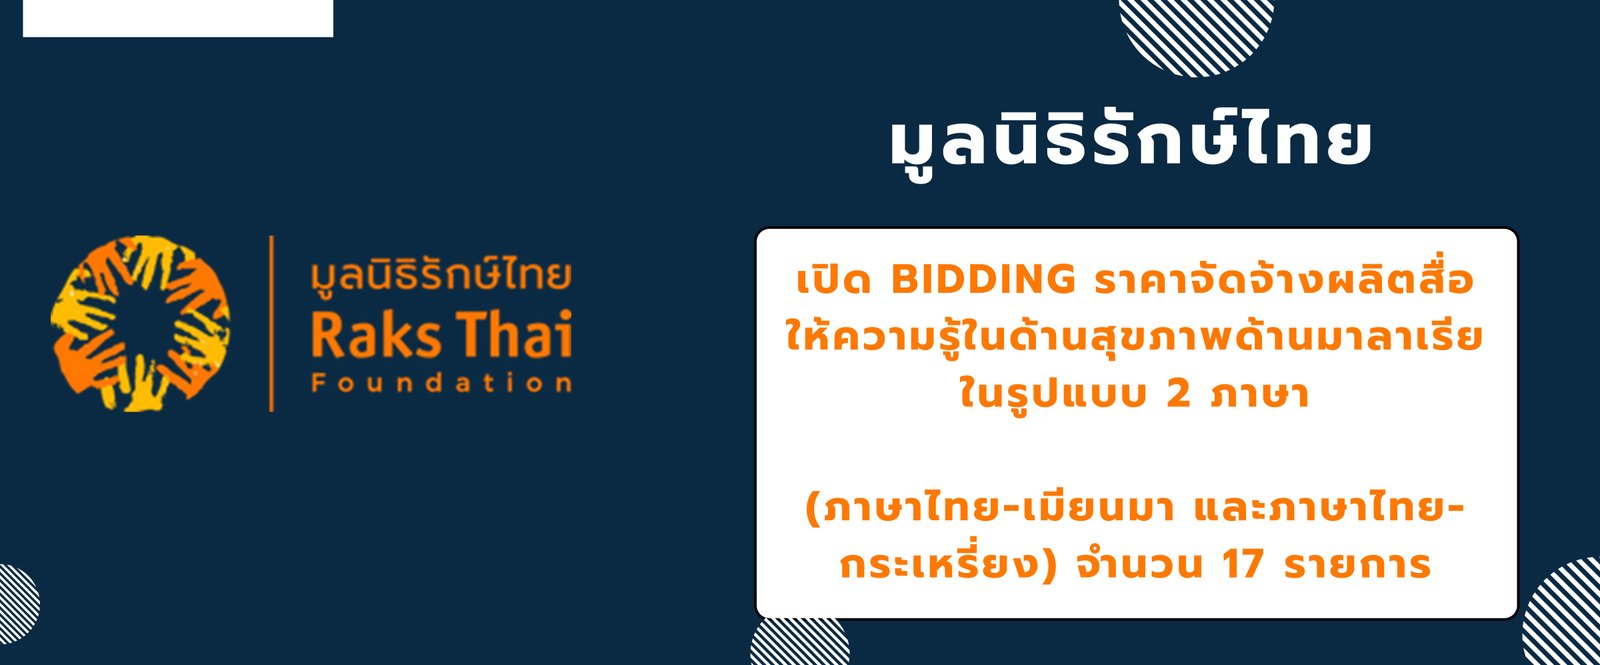 ประกาศเปิด BIDDING ราคาจัดจ้างผลิตสื่อให้ความรู้ในด้านสุขภาพด้านมาลาเรียในรูปแบบ 2 ภาษา (ภาษาไทย-เมียนมา และภาษาไทย-กระเหรี่ยง) จำนวน 17 รายการ